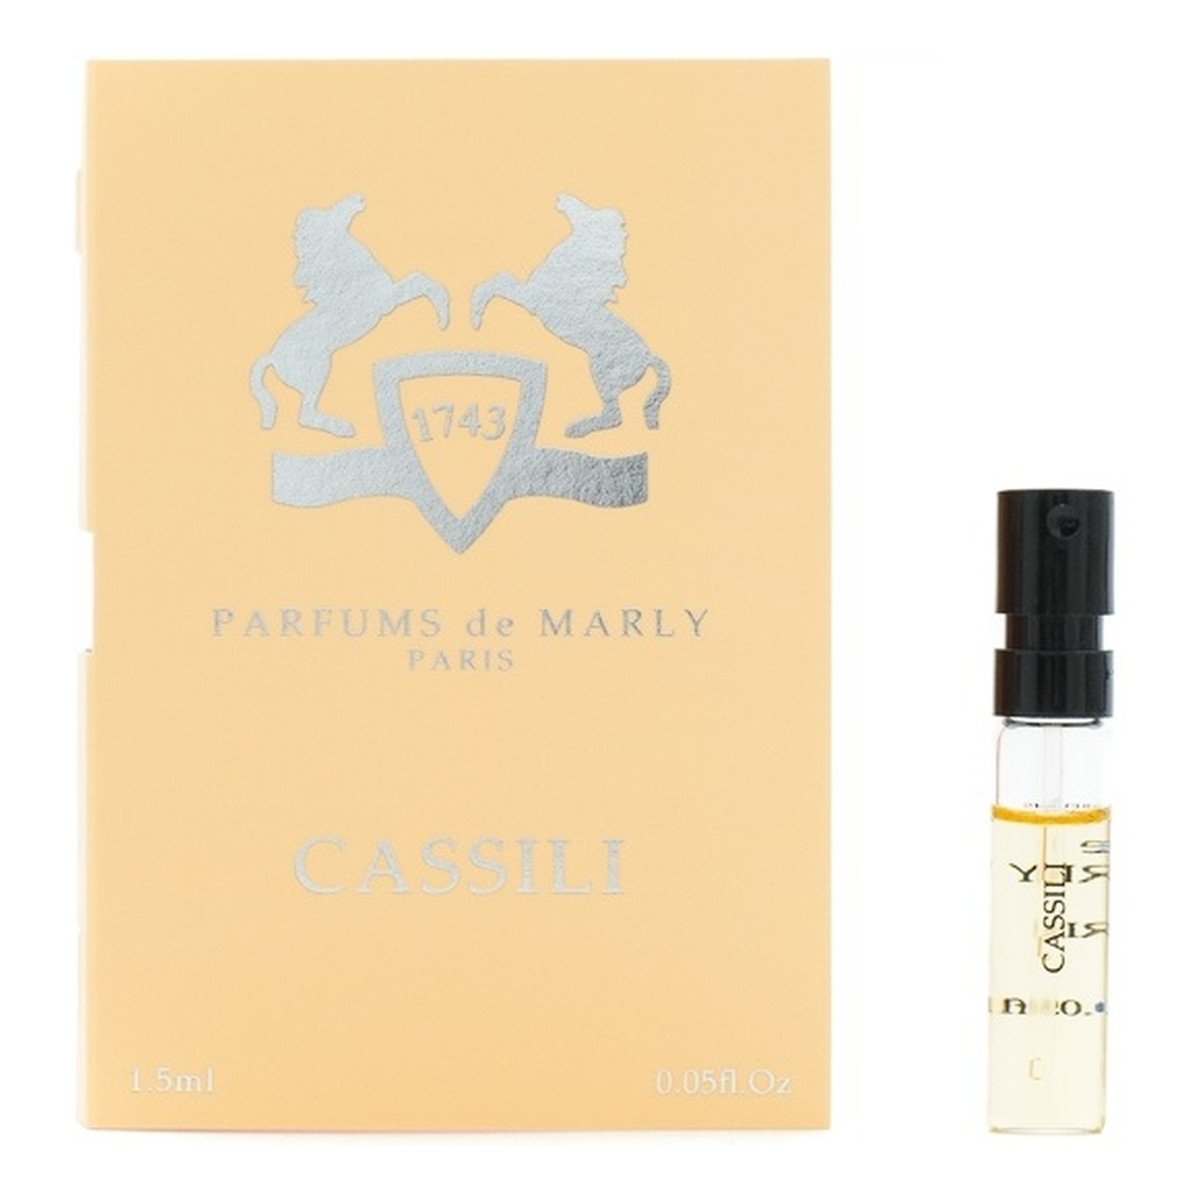 Parfums de Marly Cassili Woda perfumowana spray próbka 1.5ml